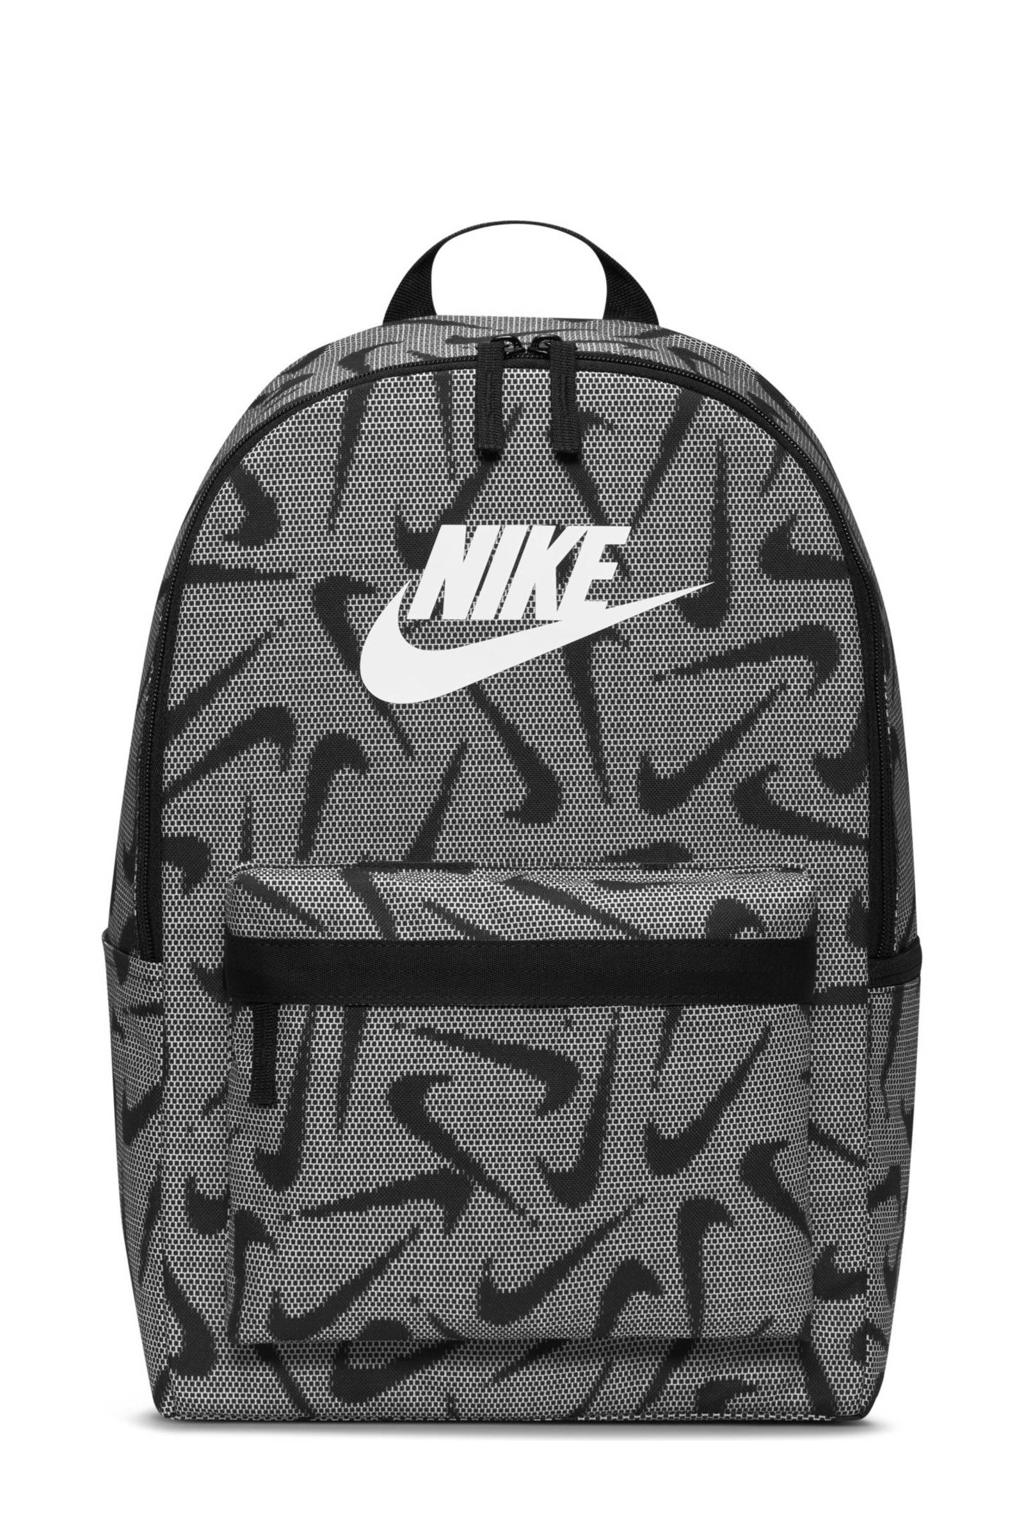 Nike  rugzak zwart/wit